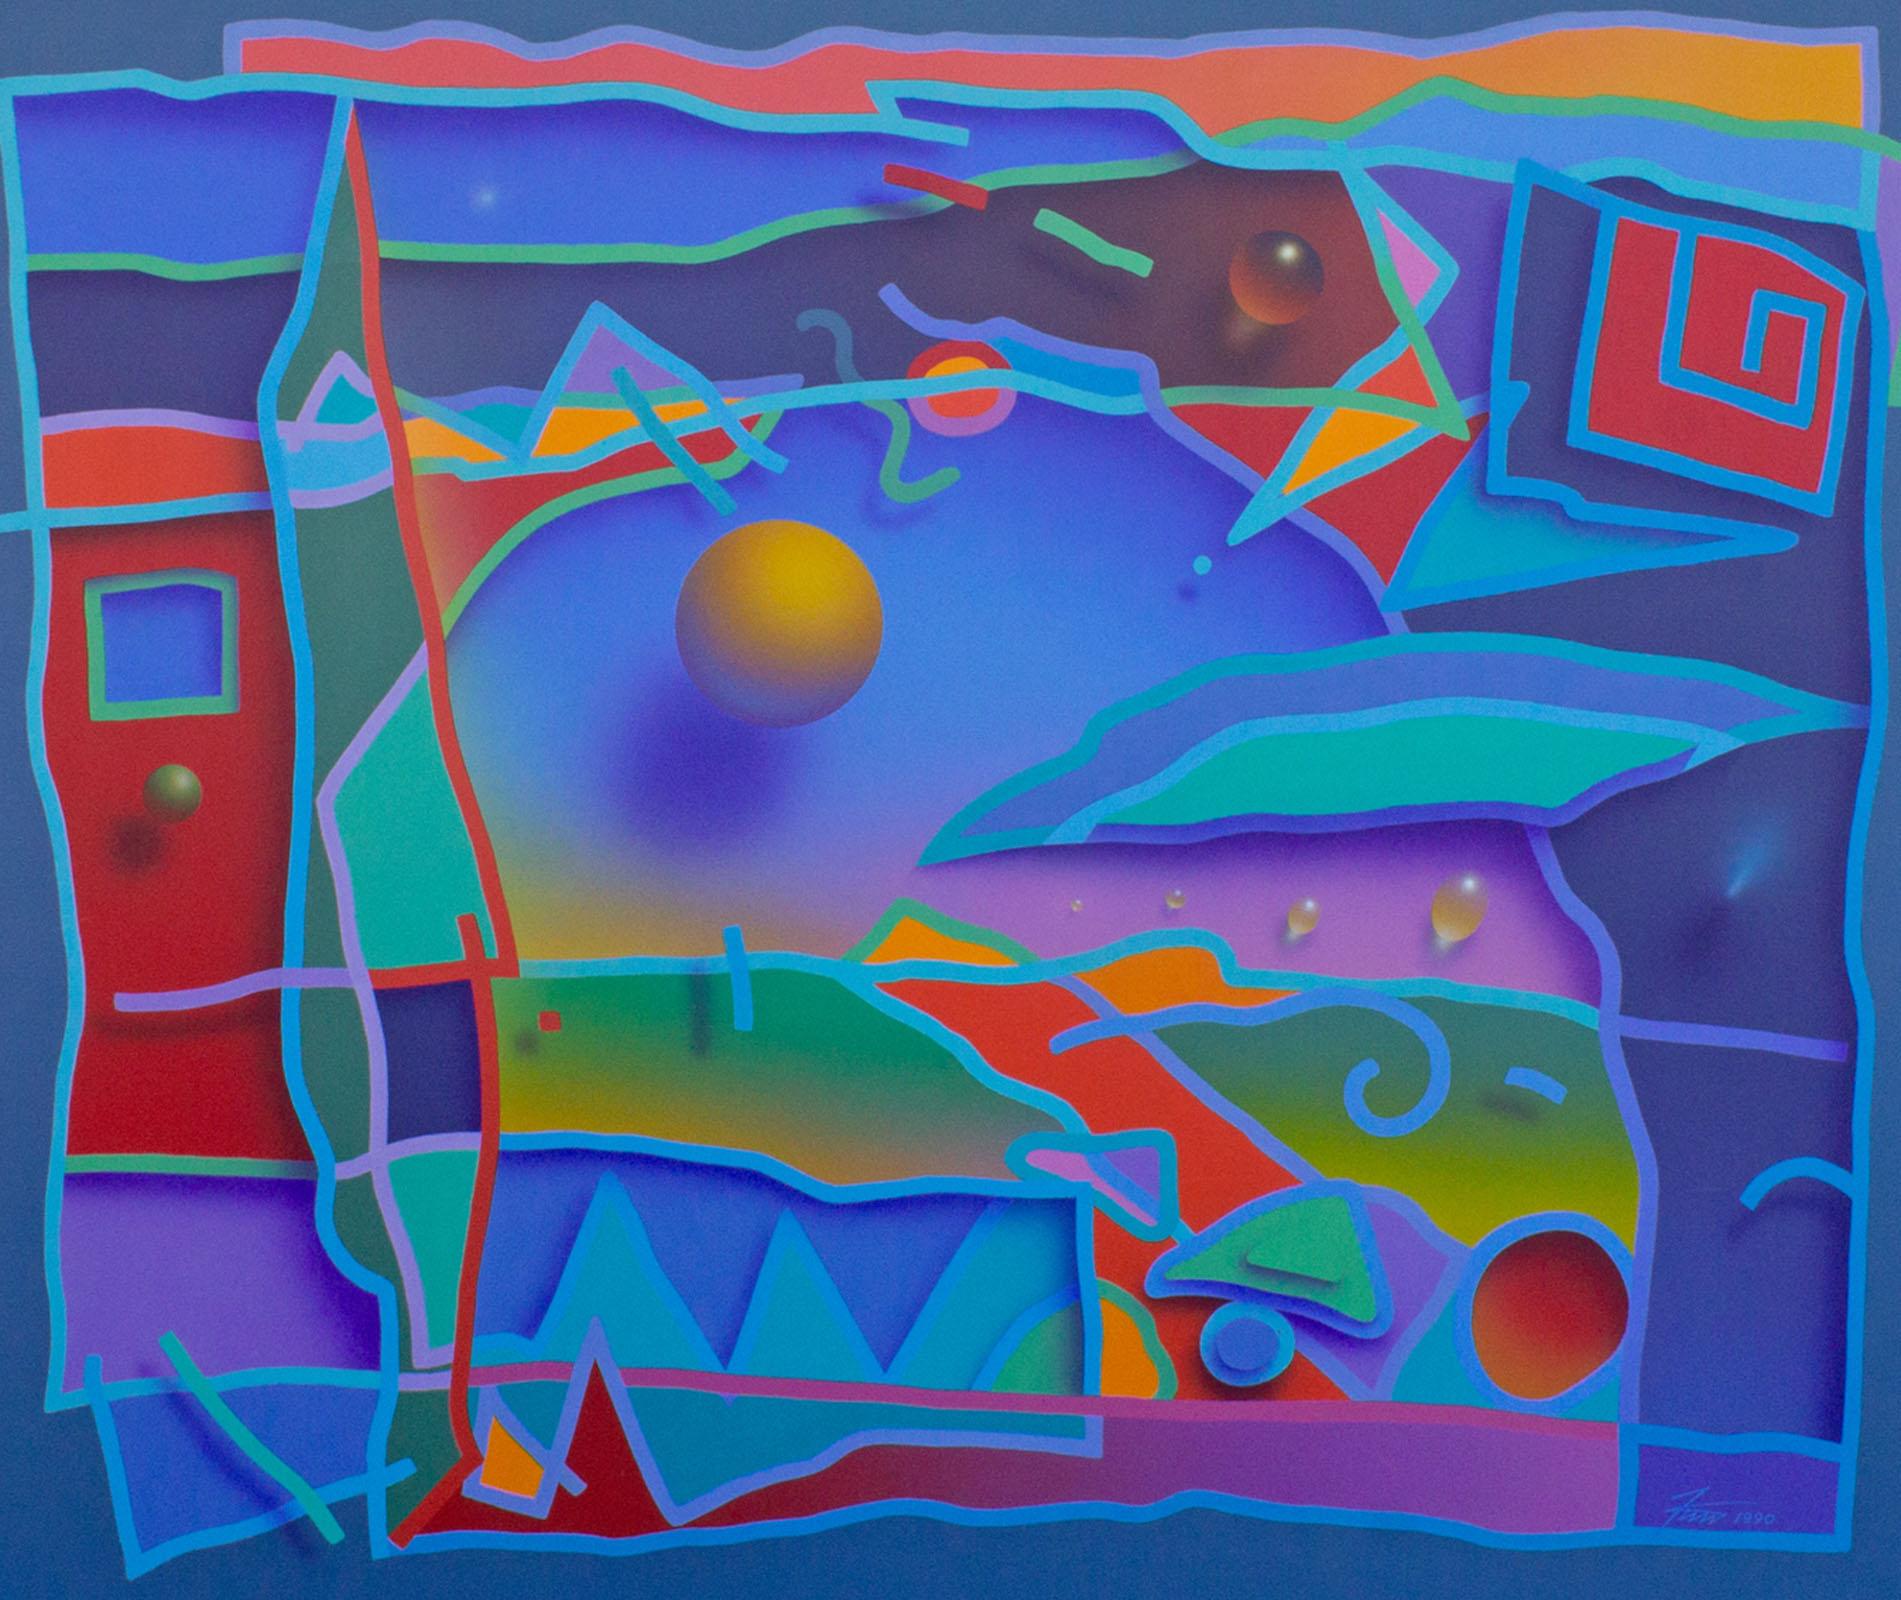 Ein Gemälde des amerikanischen Künstlers James Wille Faust (geboren 1949) aus dem Jahr 1990, Acryl auf Leinwand. Dieses lebendige Werk zeigt eine Schichtung von Formen und Mustern, die so gemalt sind, dass eine optische Illusion von schwebenden